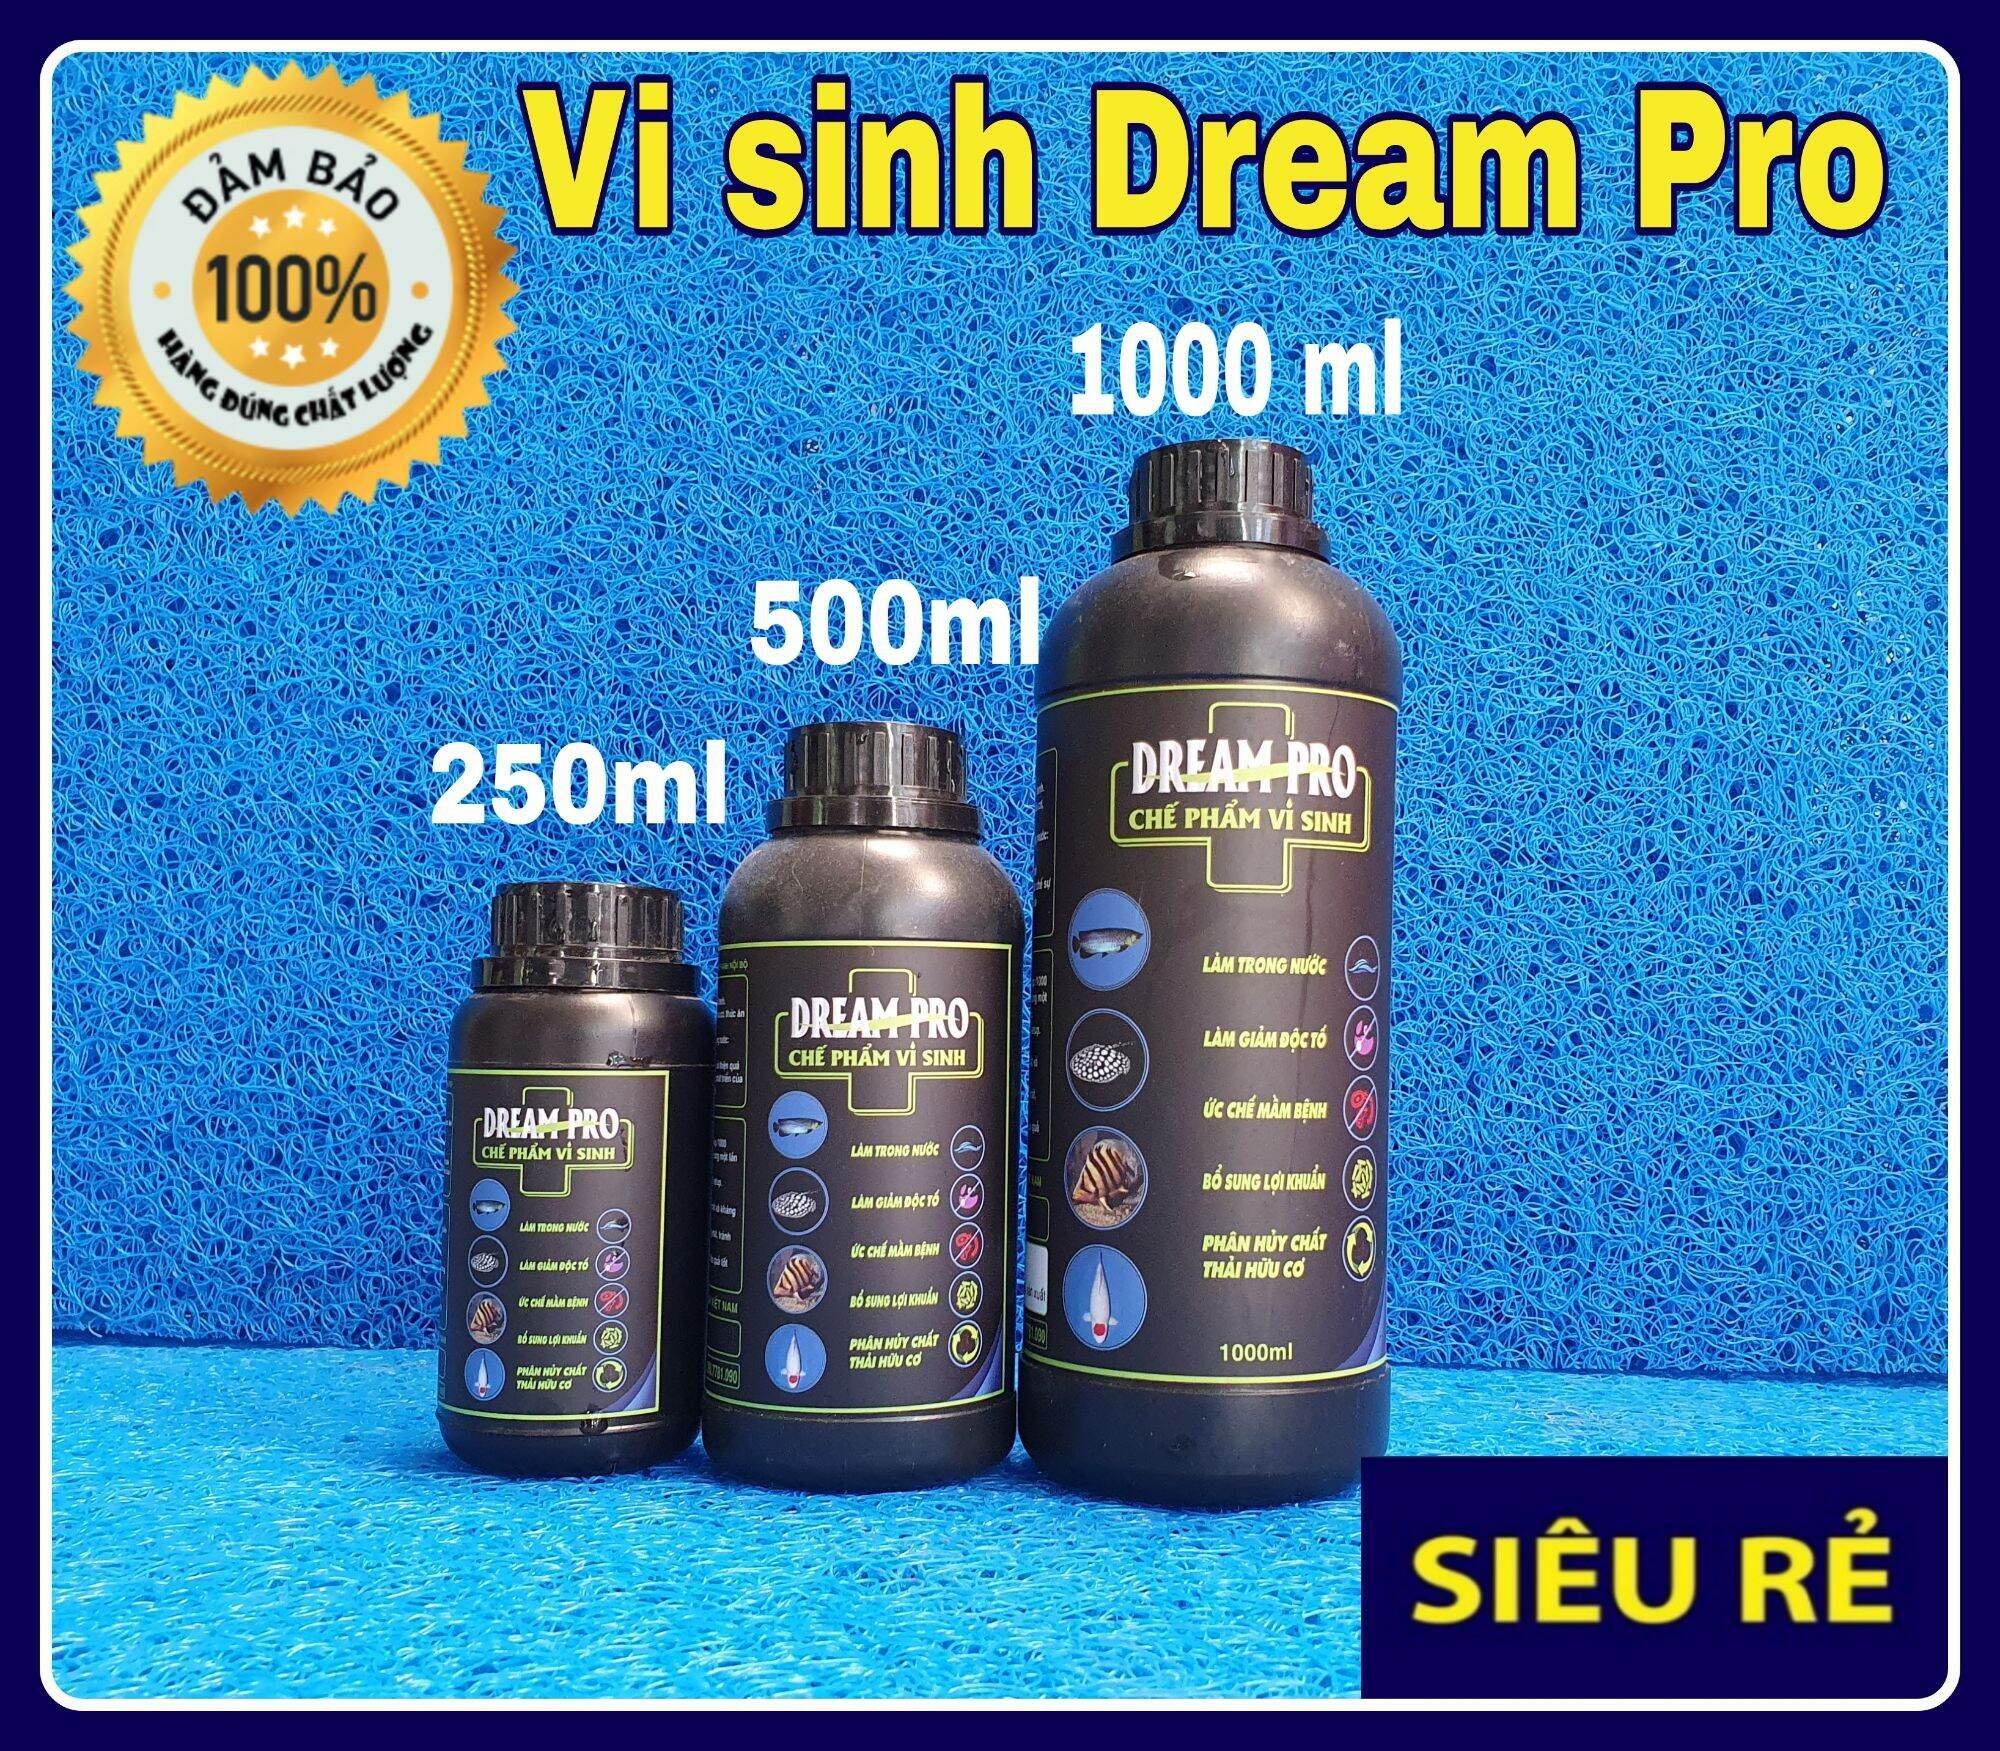 DREAM PRO - Men vi sinh làm trong nước, ức chế mầm bệnh ( chai 500ml )